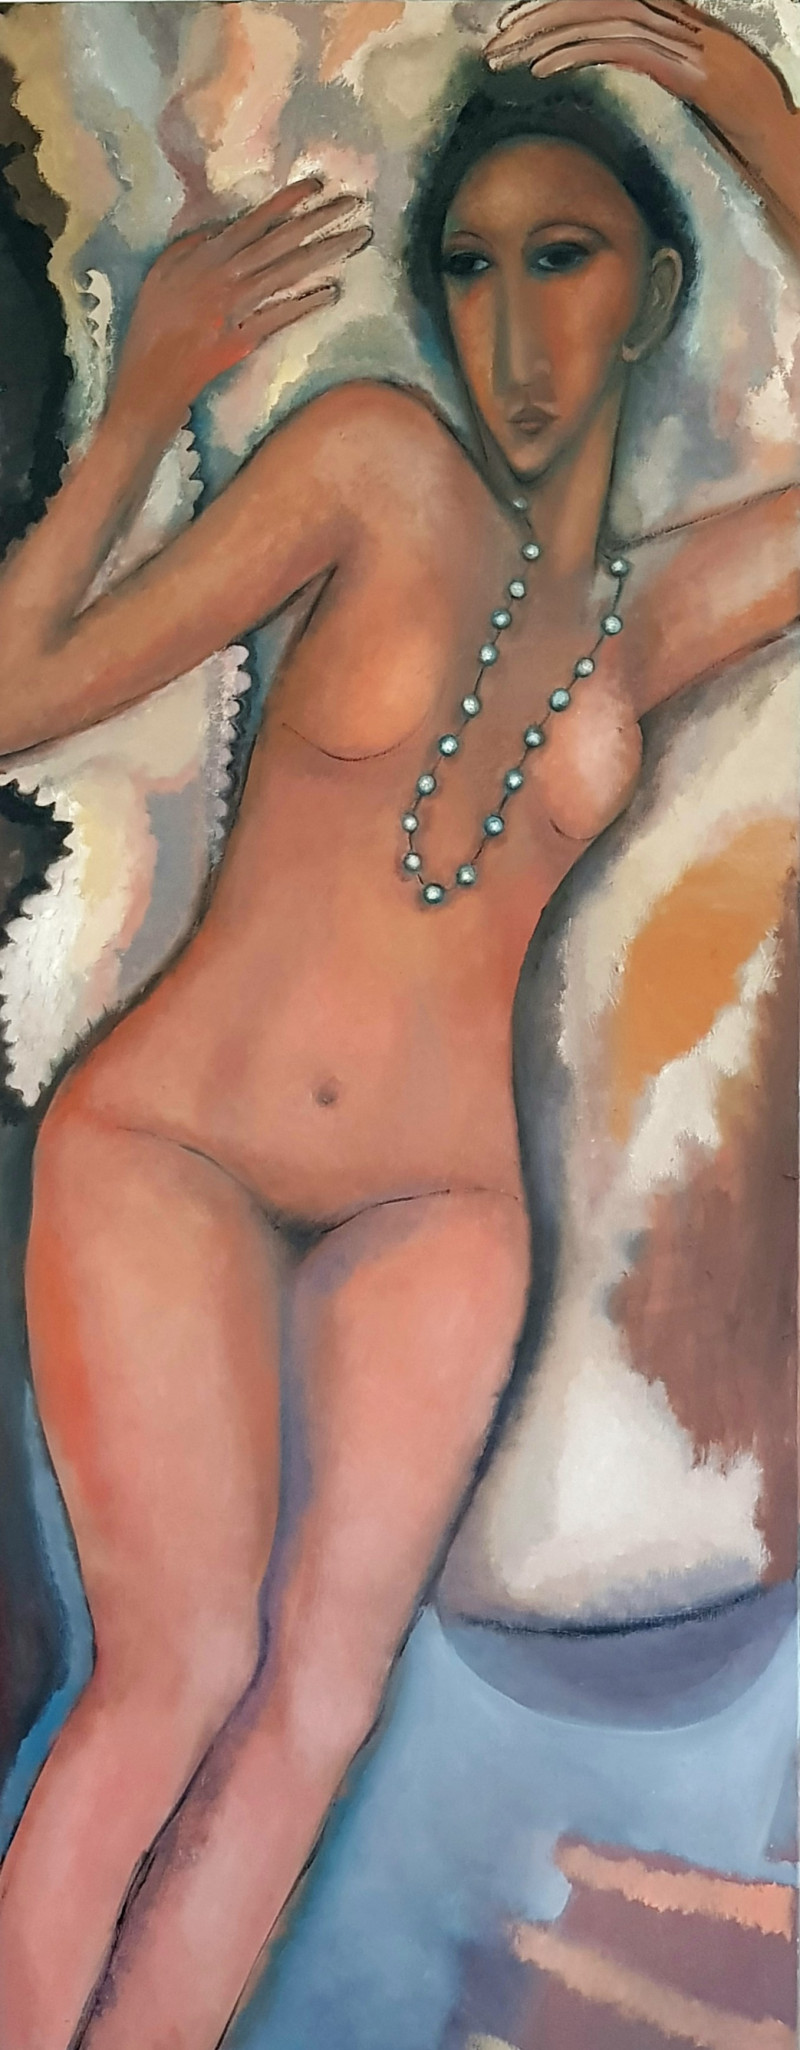 Ramunė Kliukaitė tapytas paveikslas Sutikau ją Paryžiuje, Moters grožis , paveikslai internetu